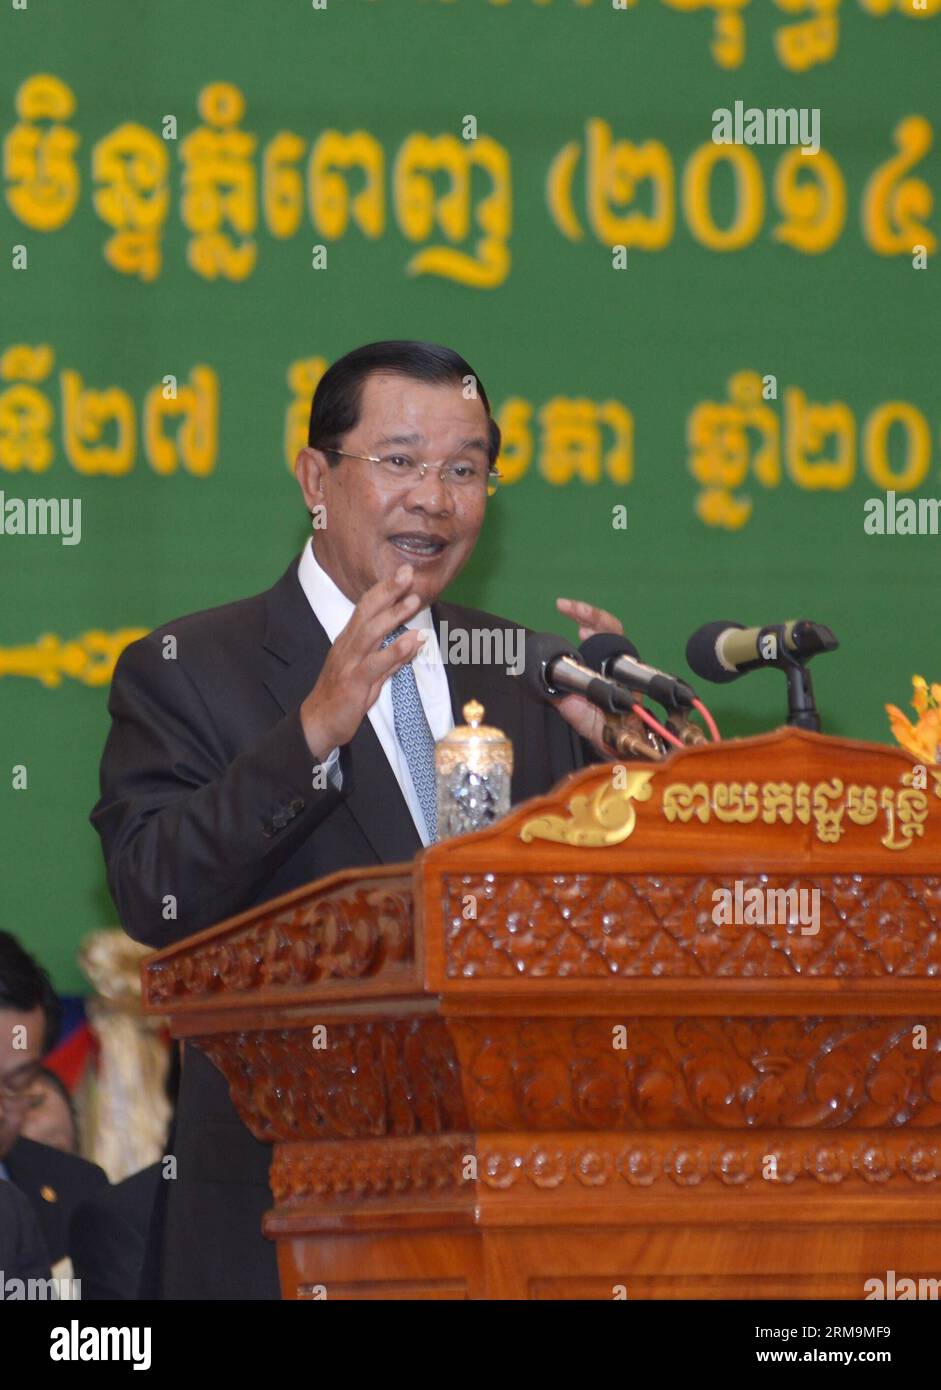 (140527) -- PHNOM PENH, 27 maggio 2014 (Xinhua) -- il primo ministro cambogiano Hun Sen (C) parla durante una cerimonia di laurea presso la Royal University di Phnom Penh, Cambogia, 27 maggio 2014. La Cambogia ha visto il colpo di stato militare in Thailandia la scorsa settimana, poiché gli affari interni tailandesi e il paese non si intrometterebbero negli affari tailandesi, ha detto martedì il primo ministro Hun Sen. (Xinhua/Sovannara) CAMBOGIA-PHNOM PENH-PM-THAILANDIA-SITUAZIONE PUBLICATIONxNOTxINxCHN Phnom Penh maggio 27 2014 XINHUA Cambodian prime Minister HUN Sen C parla durante una cerimonia di laurea PRESSO la Royal University di Phnom Penh Cambogia maggio 27 2014 Cam Foto Stock